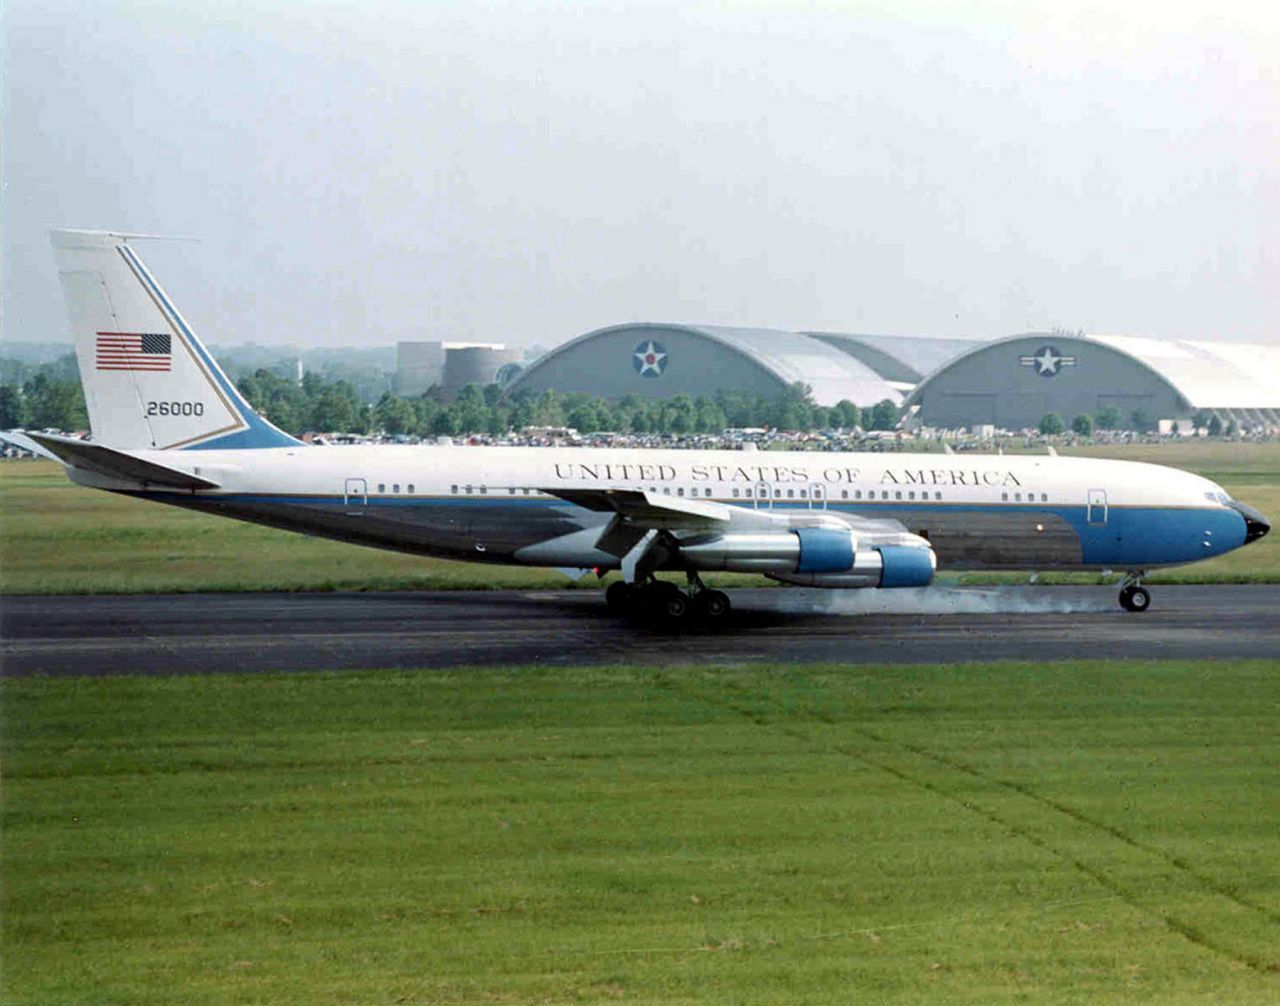 1962 wurde die erste modifizierte Boeing 707-320B des Typs VC-137C speziell für die Bedürfnisse des Präsidenten John F. Kennedy umgebaut. Unter anderem wurde sie blau lackiert. Mit Kennedys Maschine bürgerte sich dann auch der Name Air Force One ein.